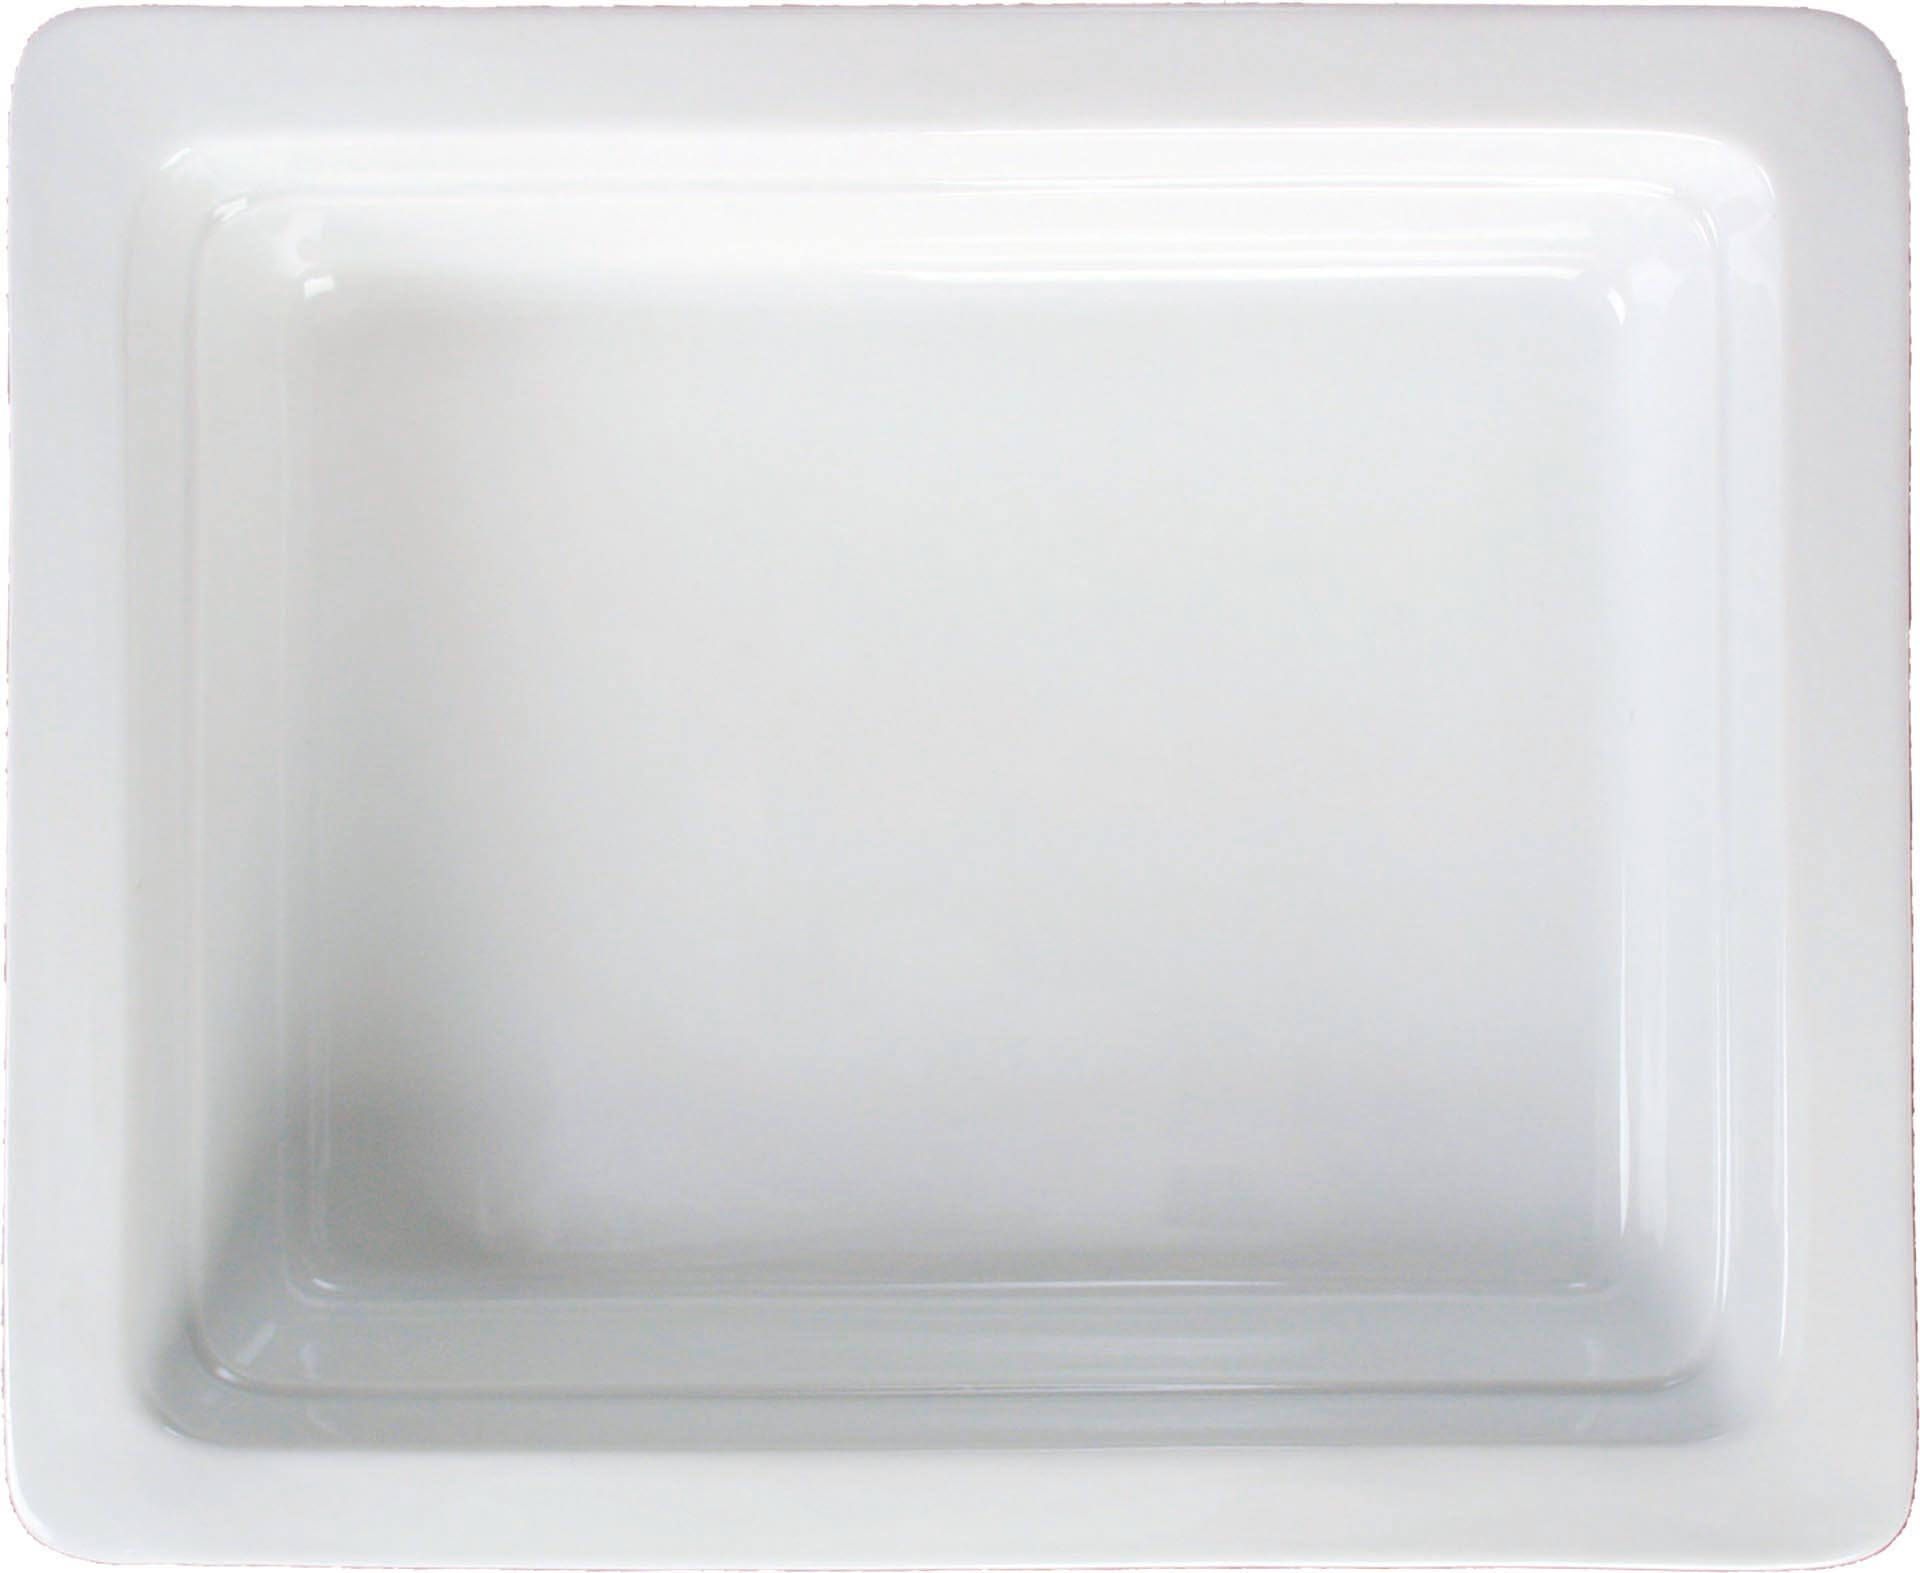 GN-Behälter Porzellan weiss GN 1/2-65 Inhalt: 3,0 Liter